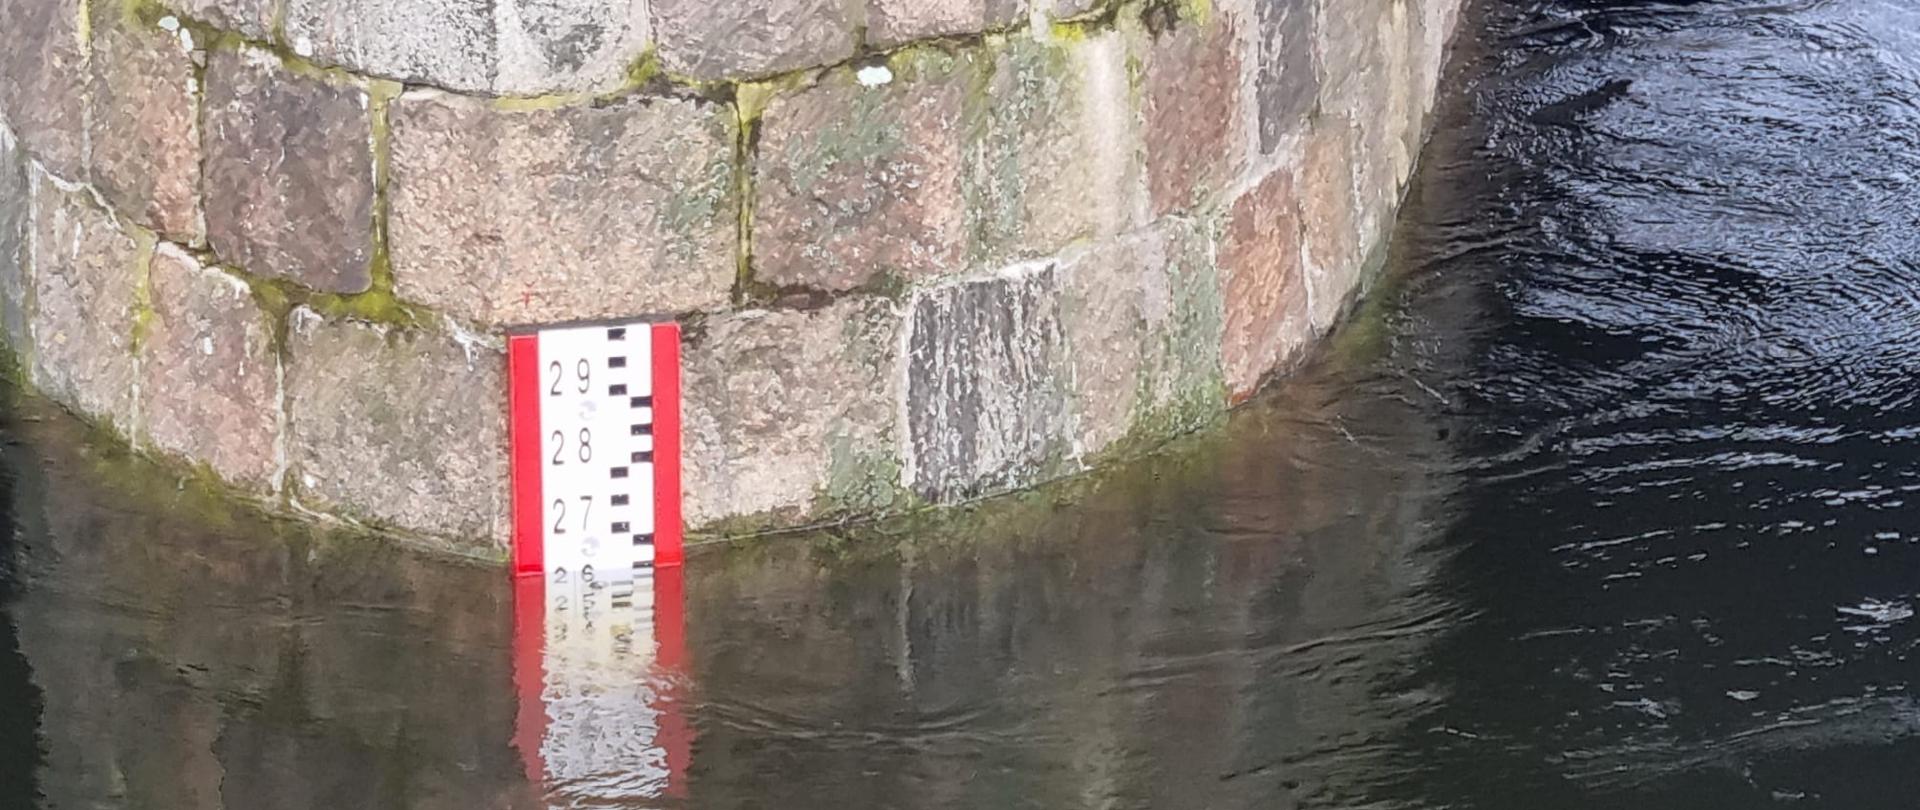 Zdjęcie przedstawia filar mostu na rzece Warta z umieszczonym wskaźnikiem stanu poziomu wody